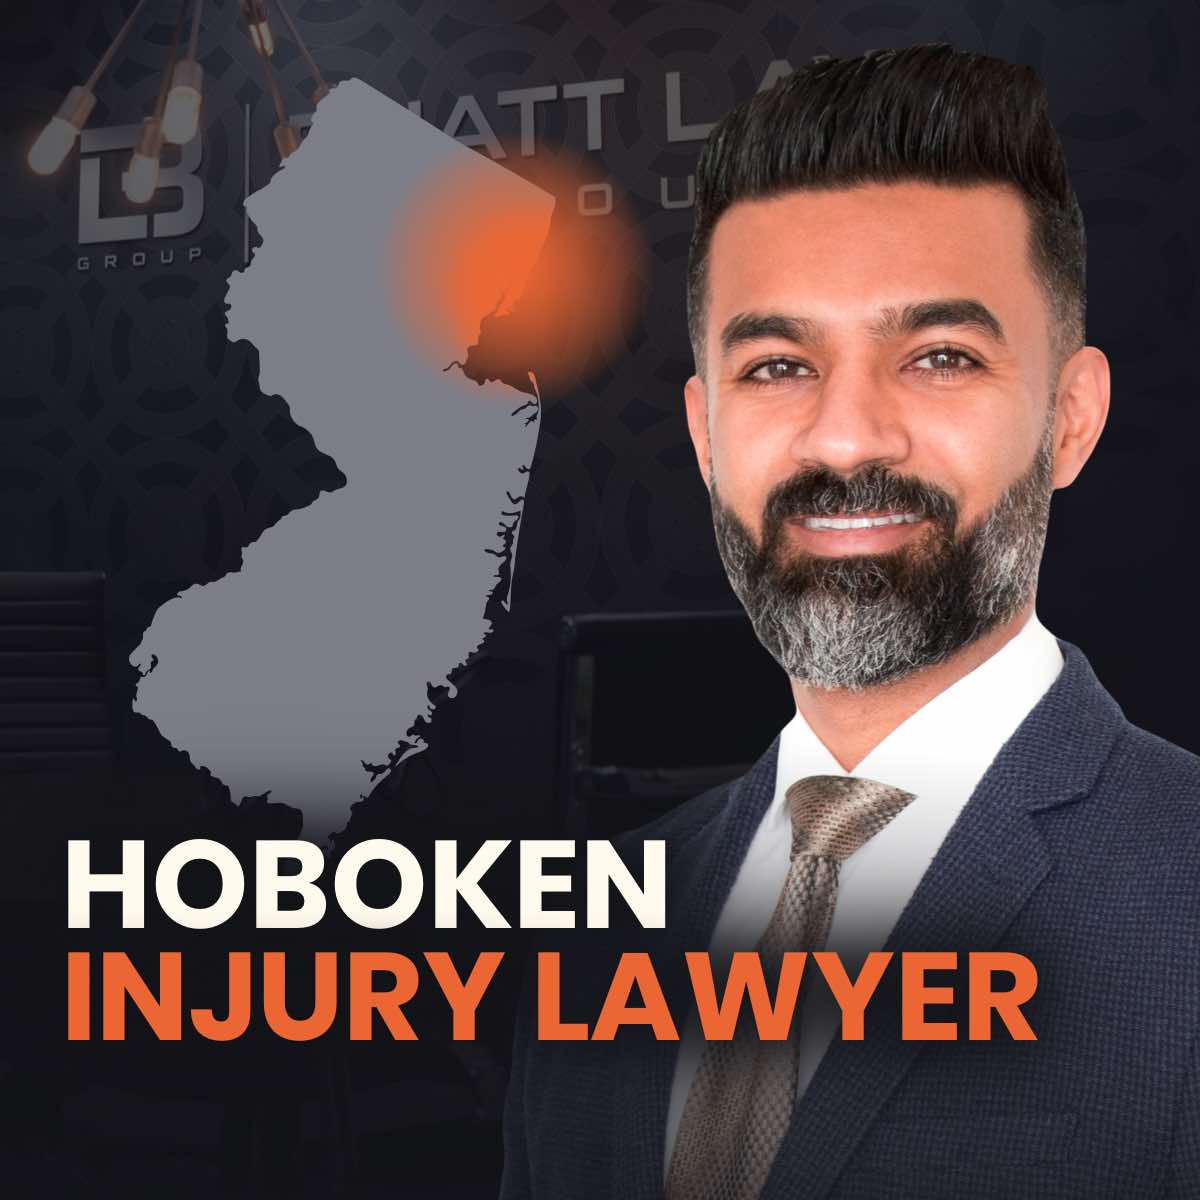 Hoboken Injury Lawyer